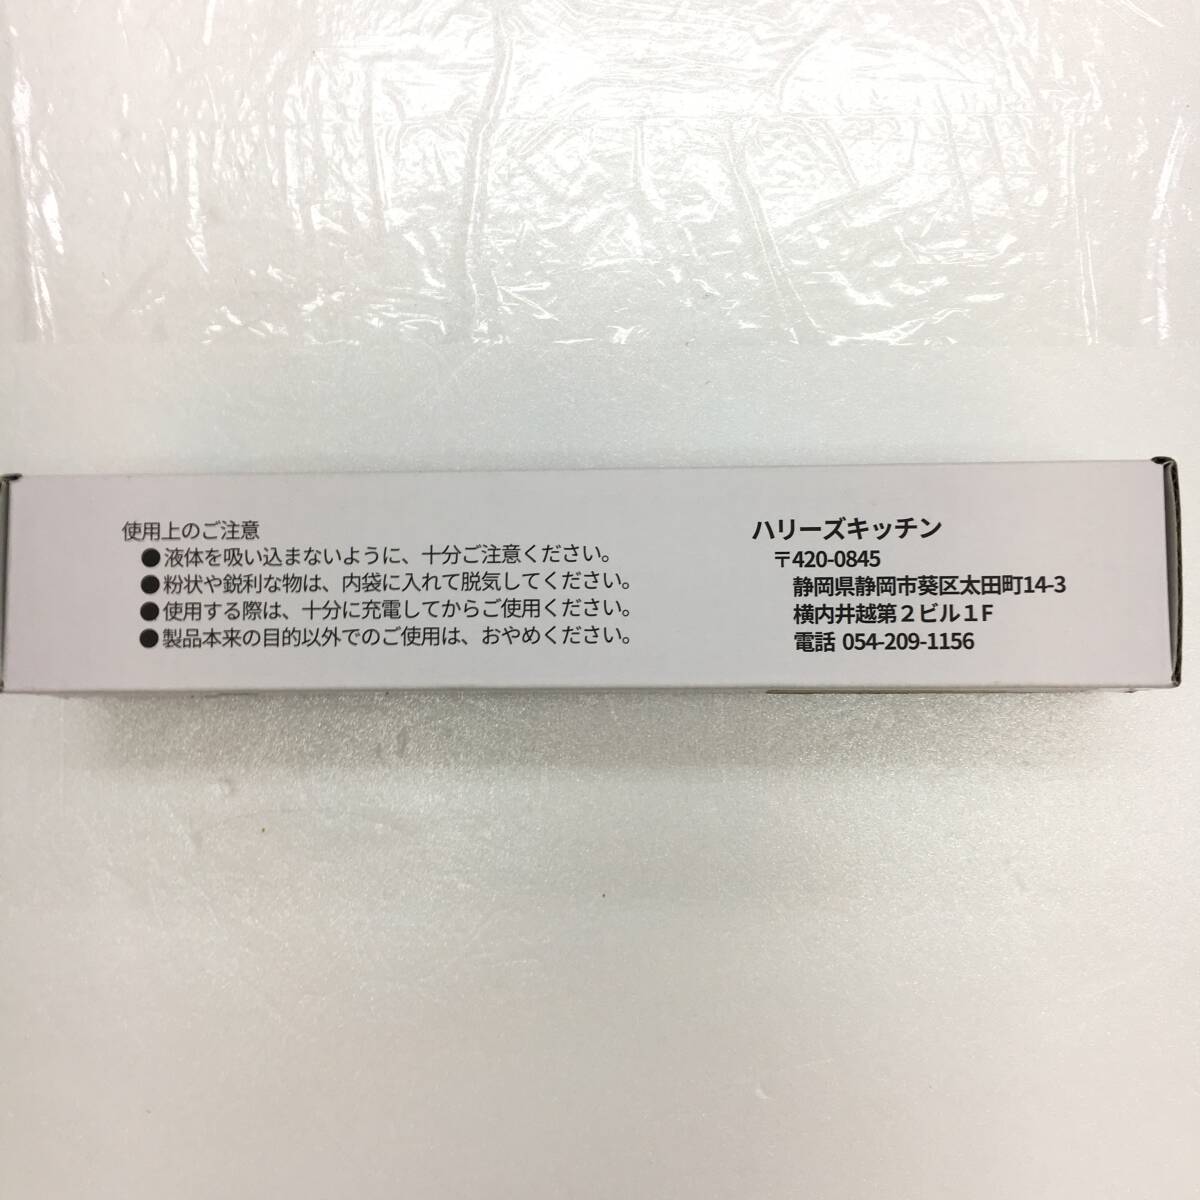 [1 иен аукцион ] переносной вакуум изолирующий слой беспроводной кухня снэки свежесть гарантия . сумка изоляция черный TS01B001507